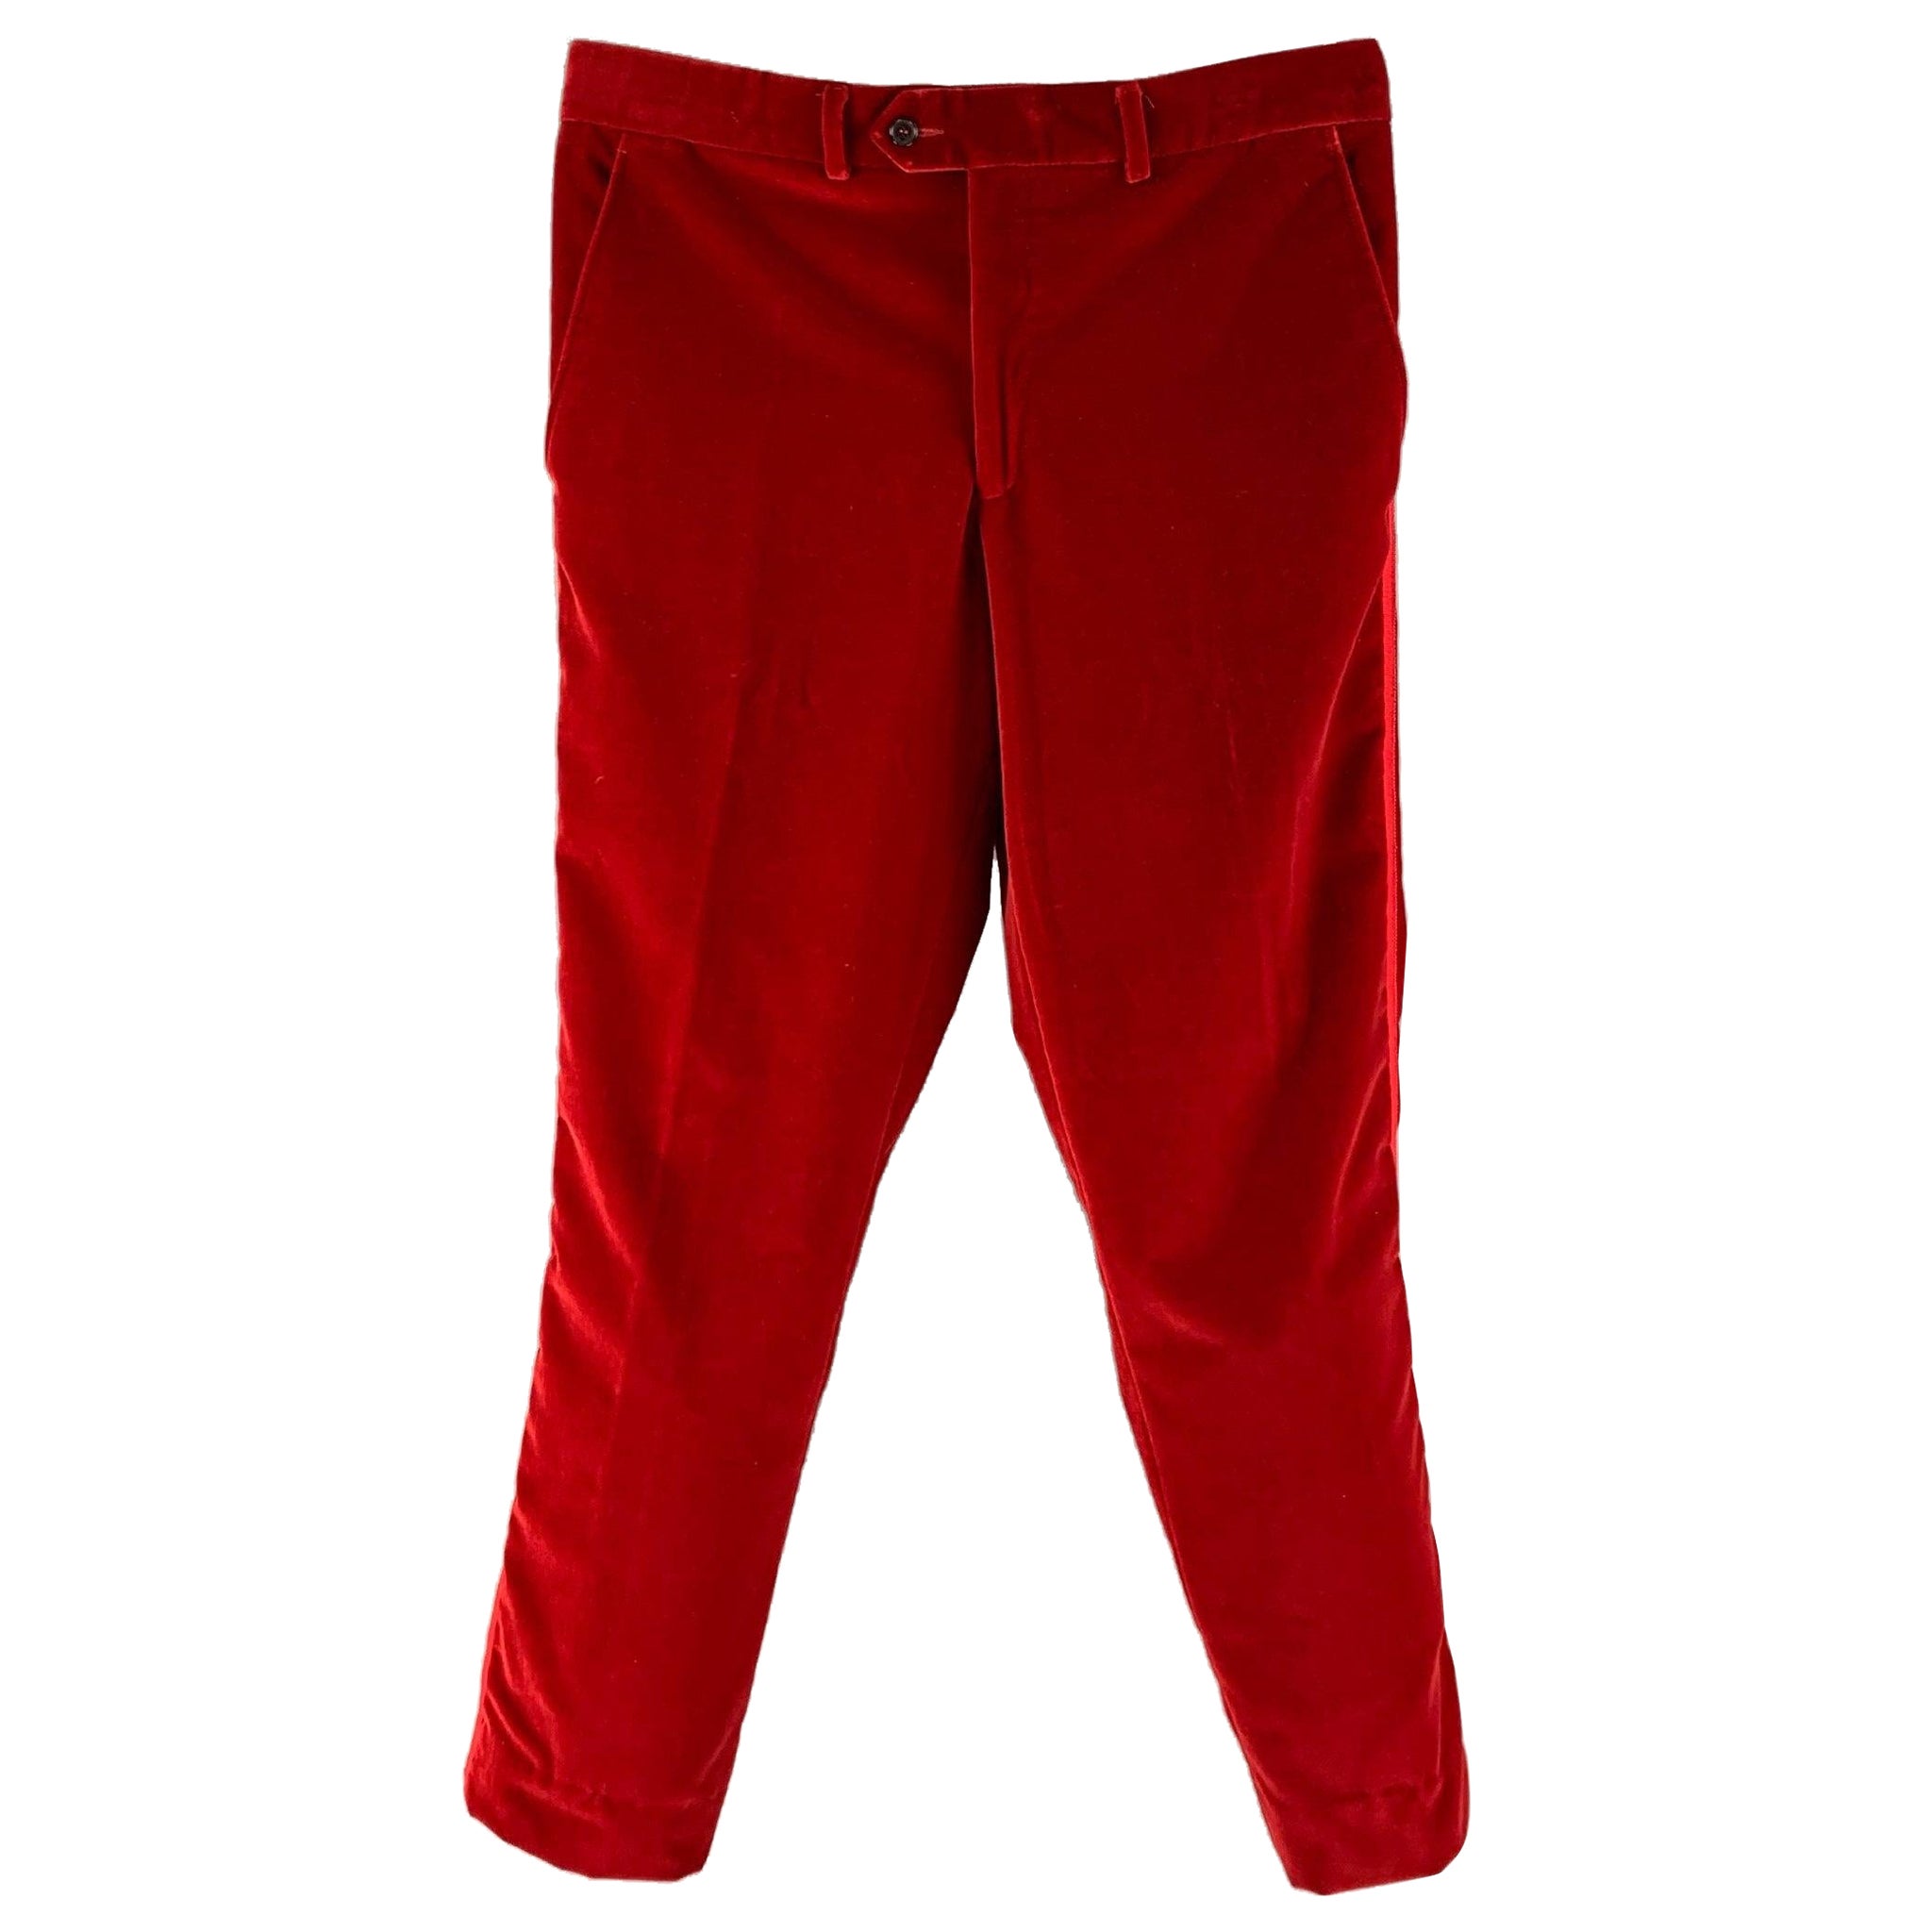 ETRO Size 38 Red Velvet Tuxedo Dress Pants For Sale